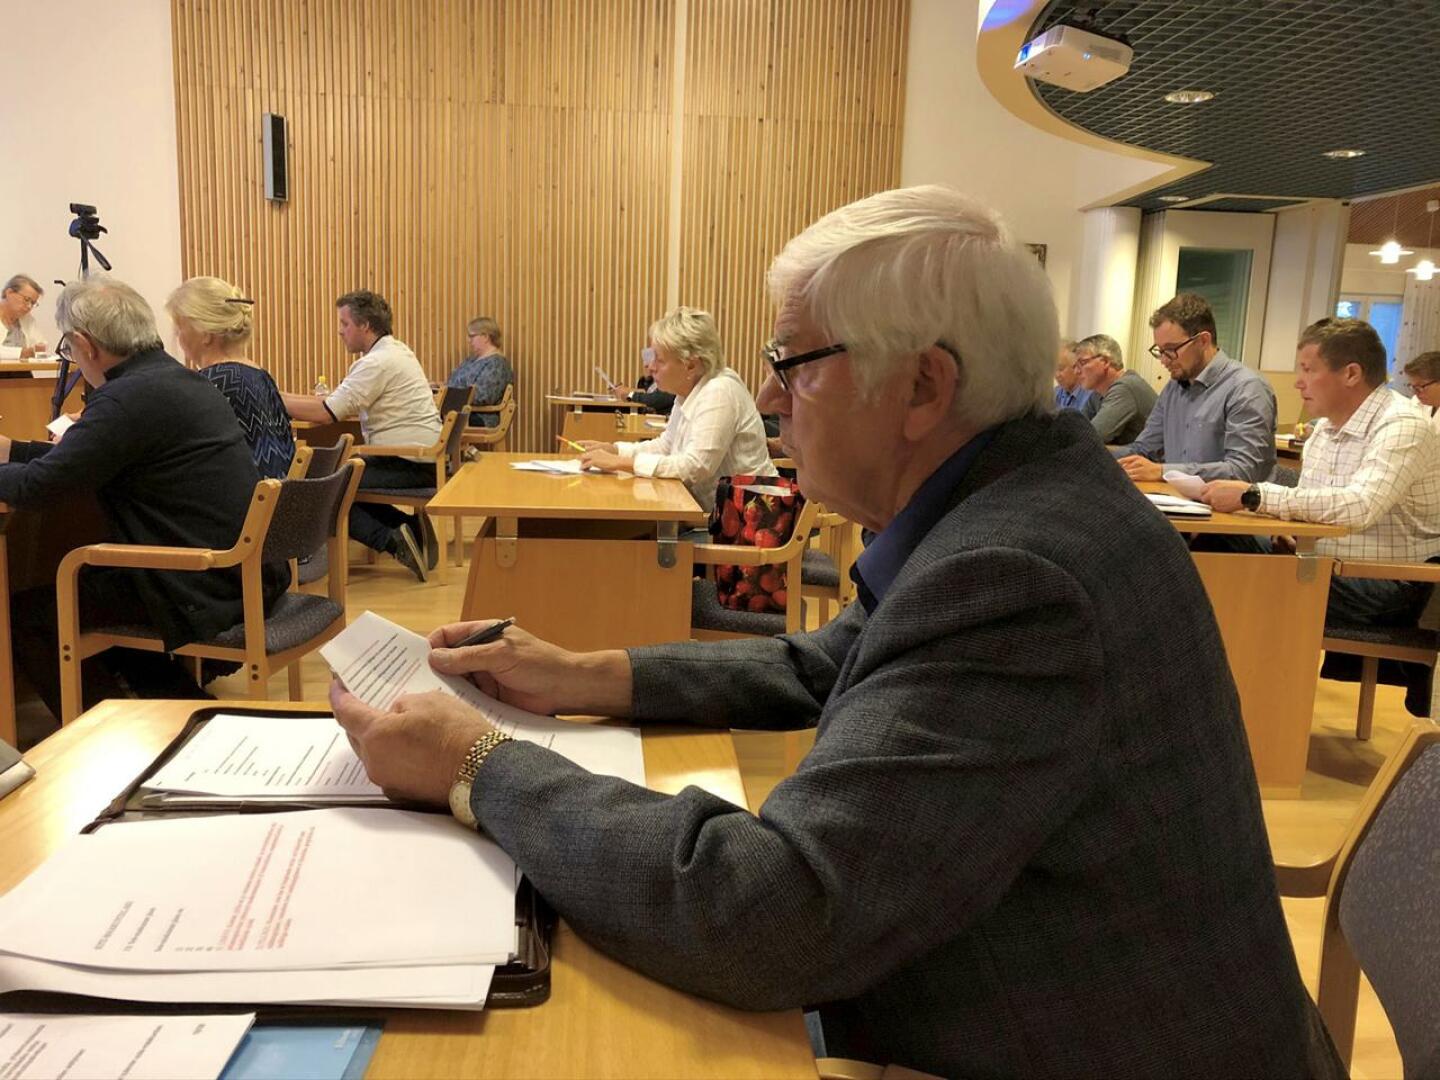 Valtuuttetu Tapani Myllymäki (Pro)  haluaa, että Kruunupyy kysyy kuntalaisten mielipidettä sote-palveluiden järjestämisestä ja mahdollisesta halukkuudesta vaihtaa maakuntaa